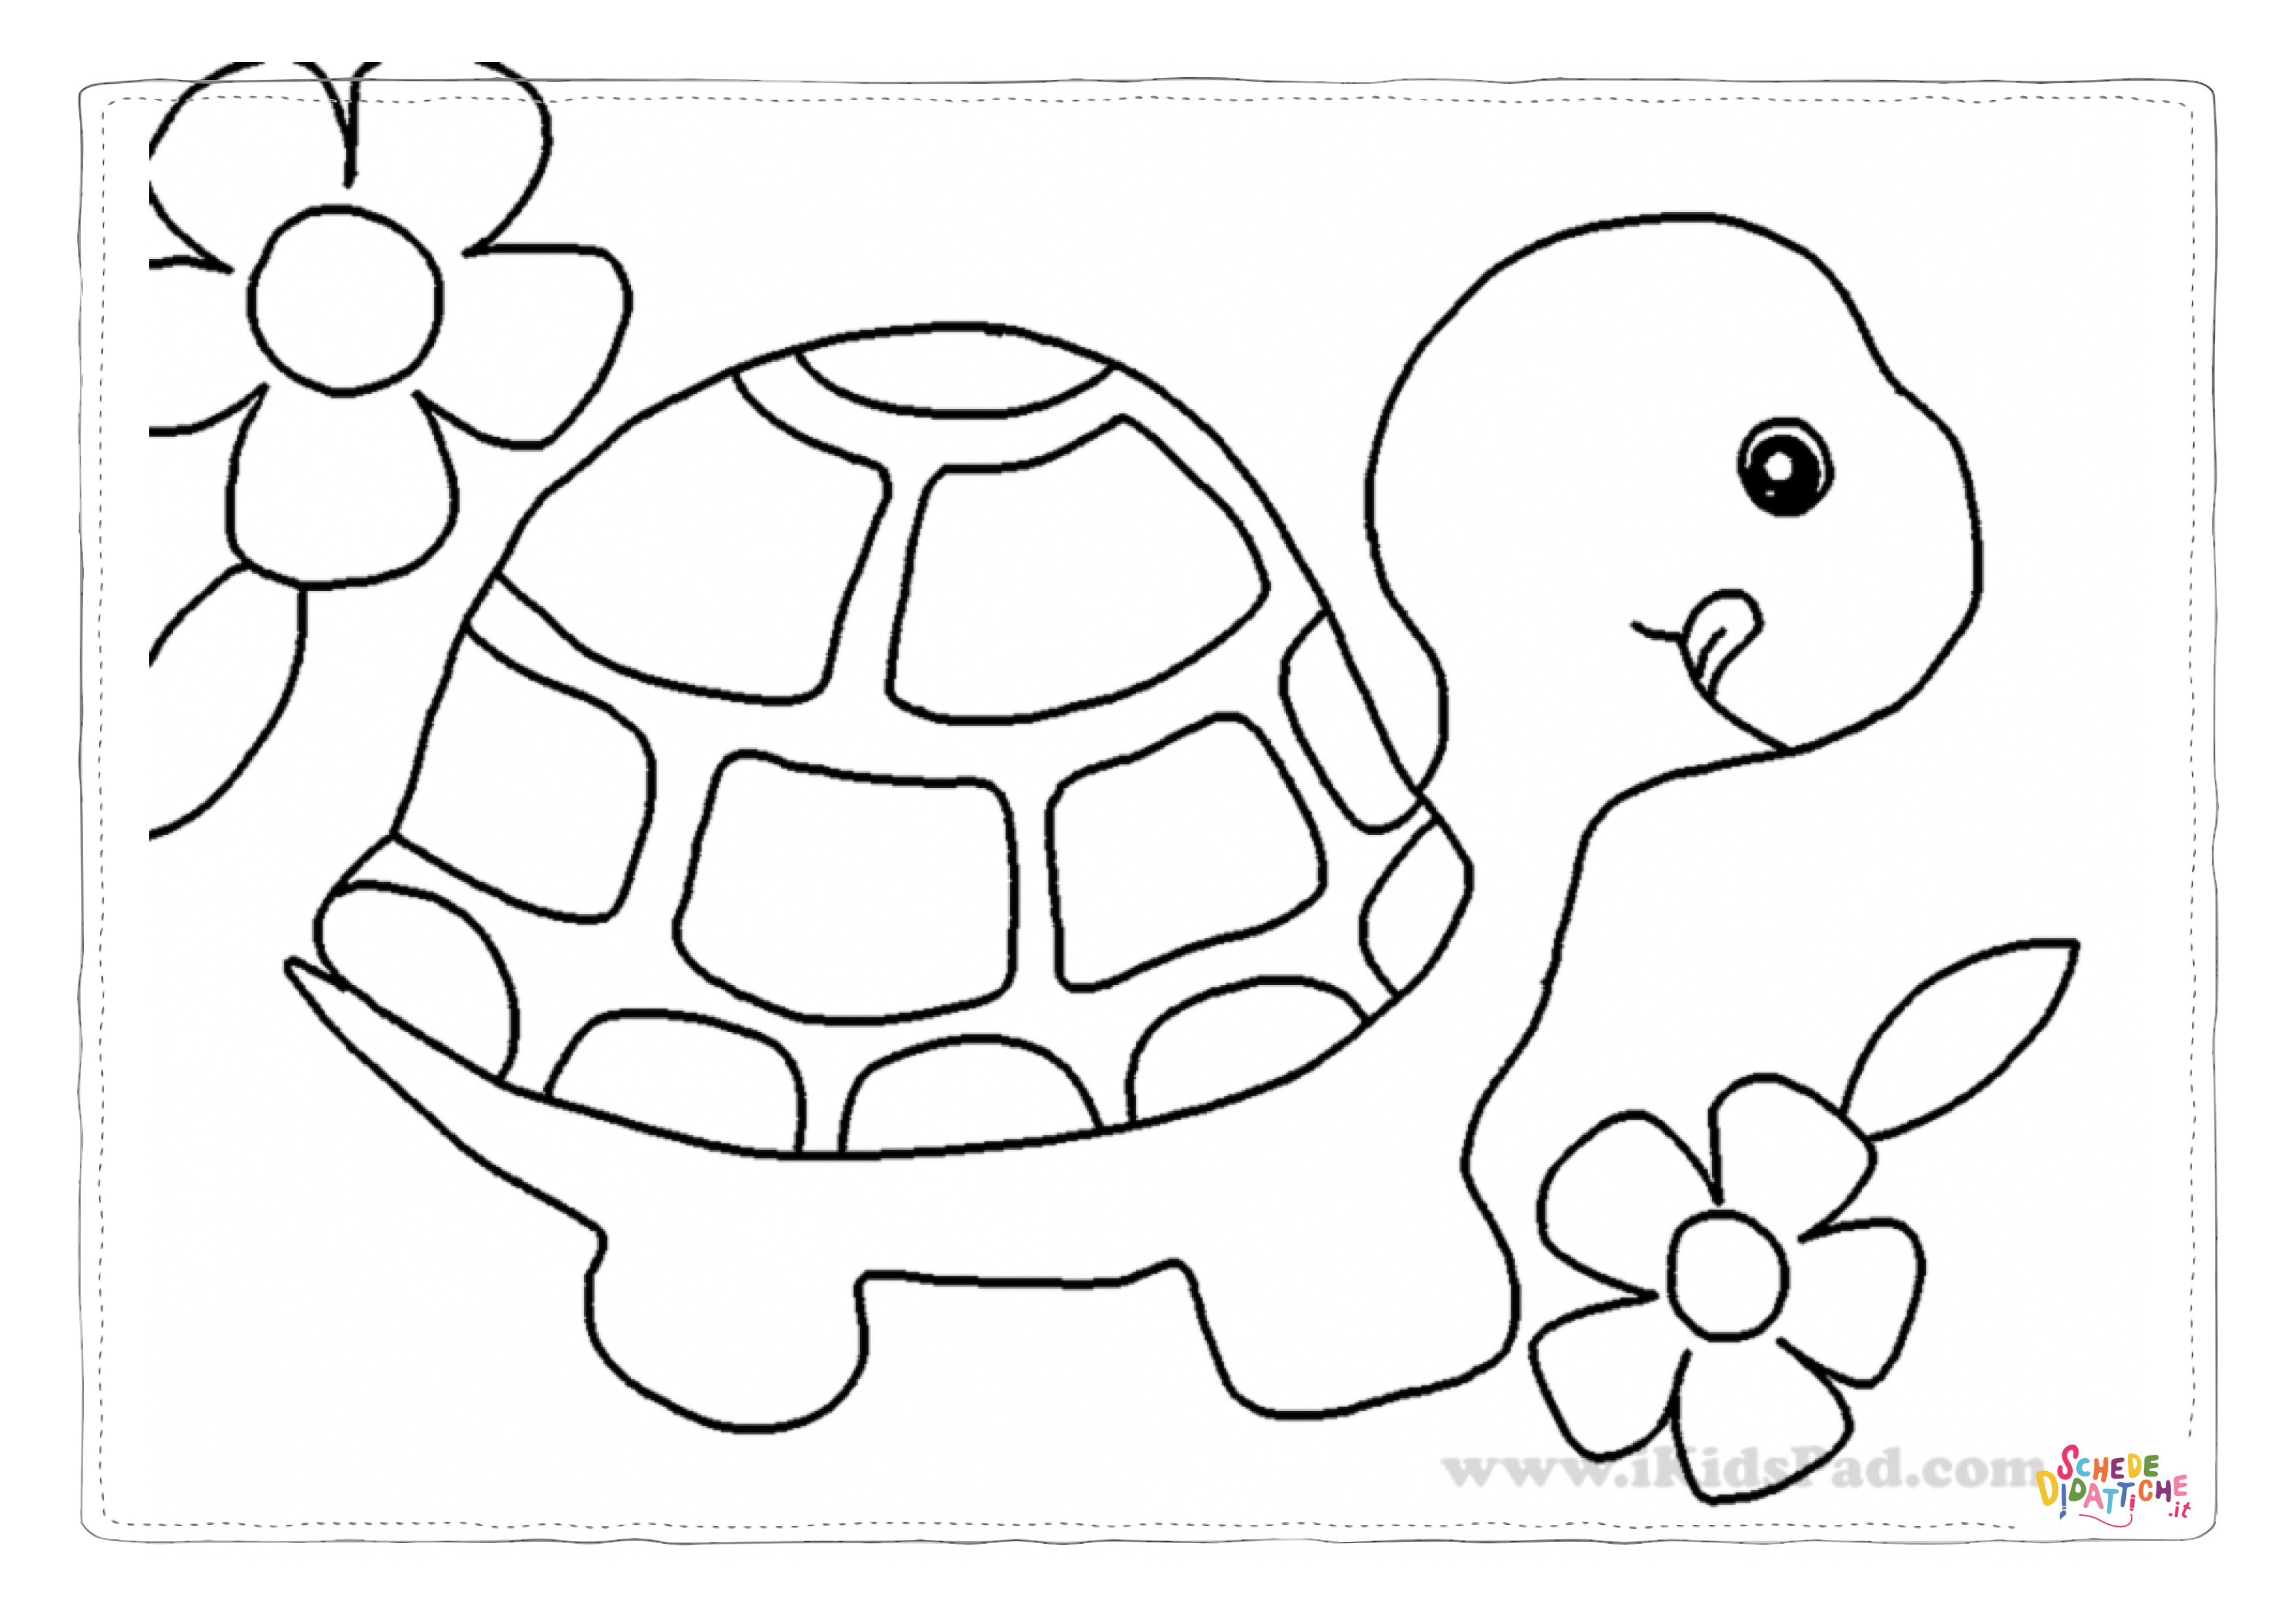 Disegno di tartaruga di terra da stampare e colorare 10